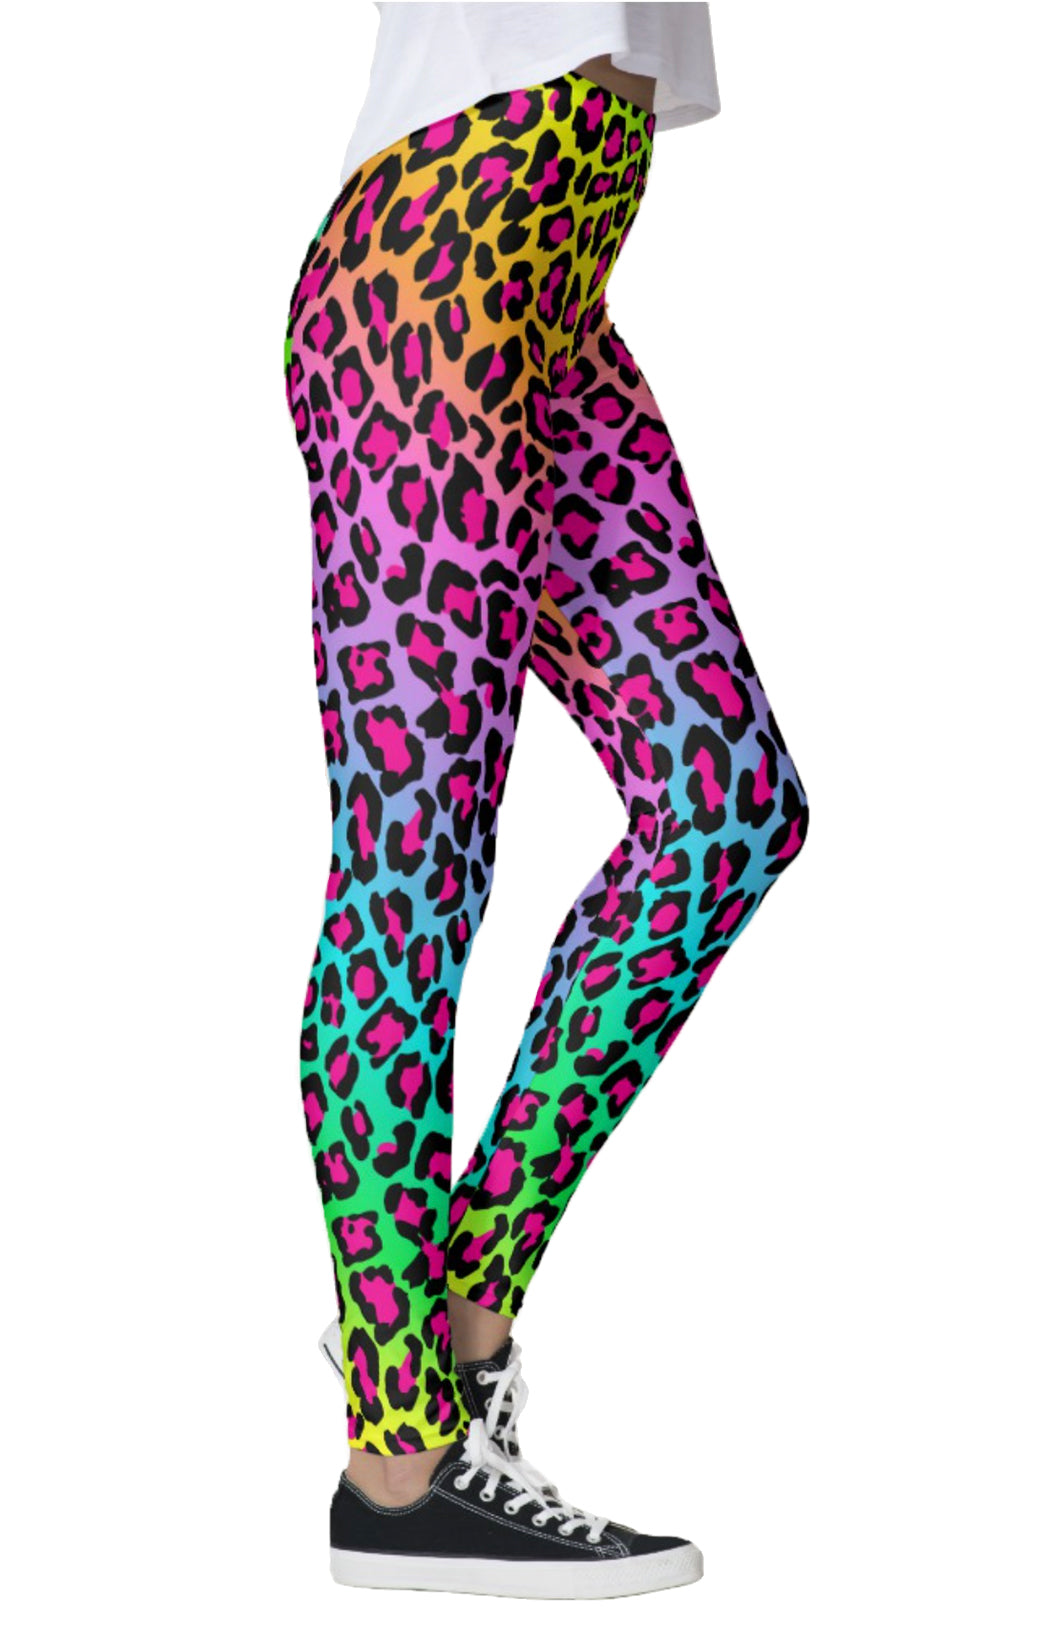 Rainbow Cheetah Leggings